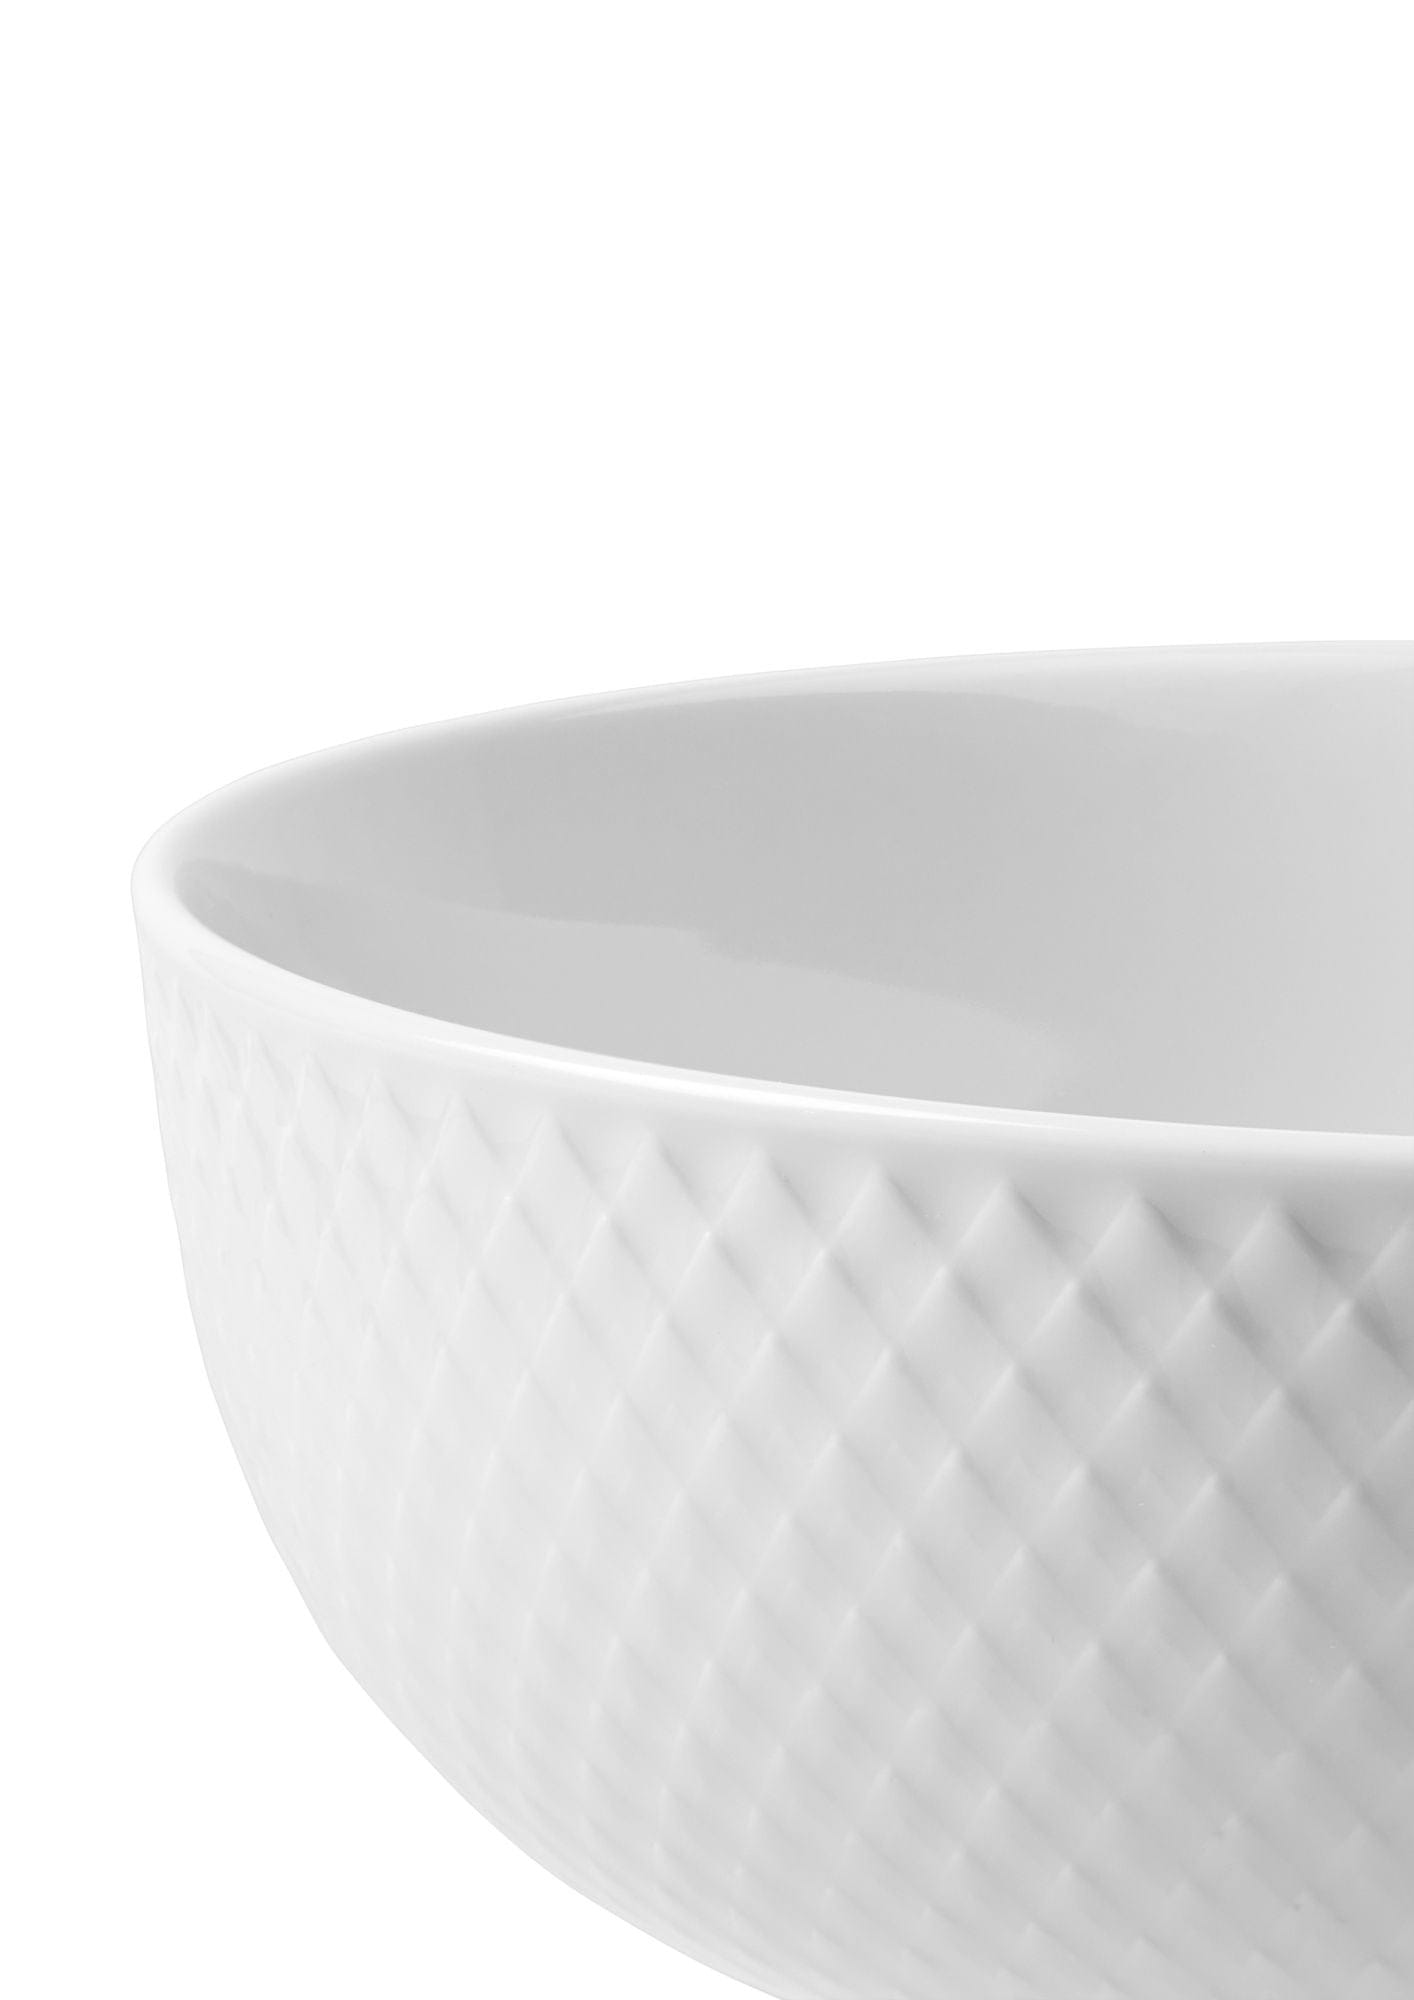 Lyngby Porcelæn Rhombe Bowl Ø15,5 cm, bílá